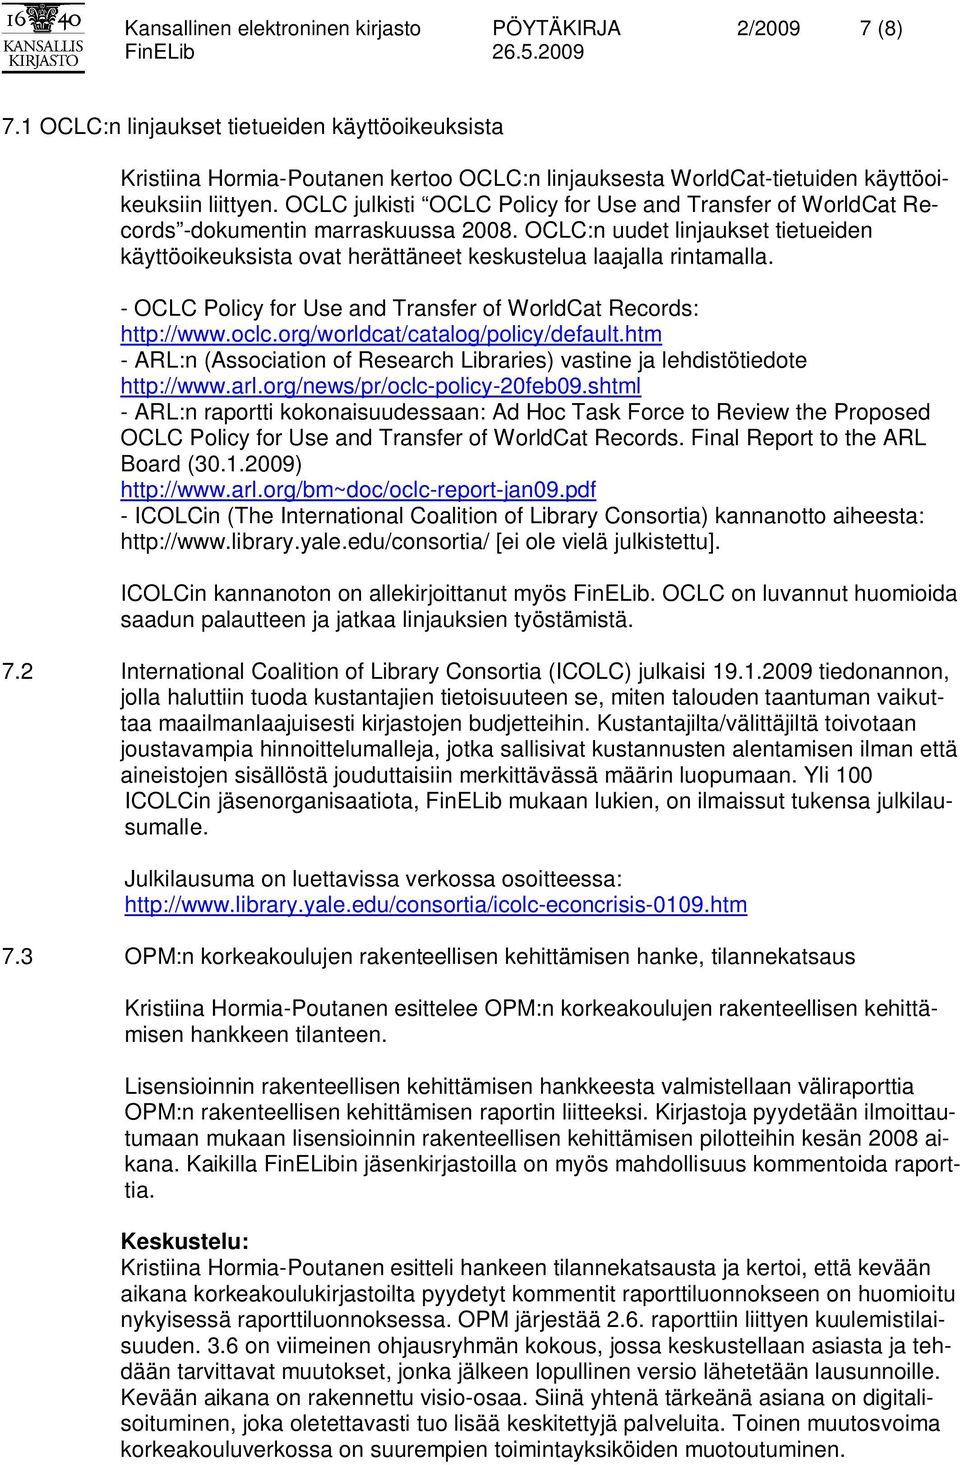 OCLC julkisti OCLC Policy for Use and Transfer of WorldCat Records -dokumentin marraskuussa 2008. OCLC:n uudet linjaukset tietueiden käyttöoikeuksista ovat herättäneet keskustelua laajalla rintamalla.